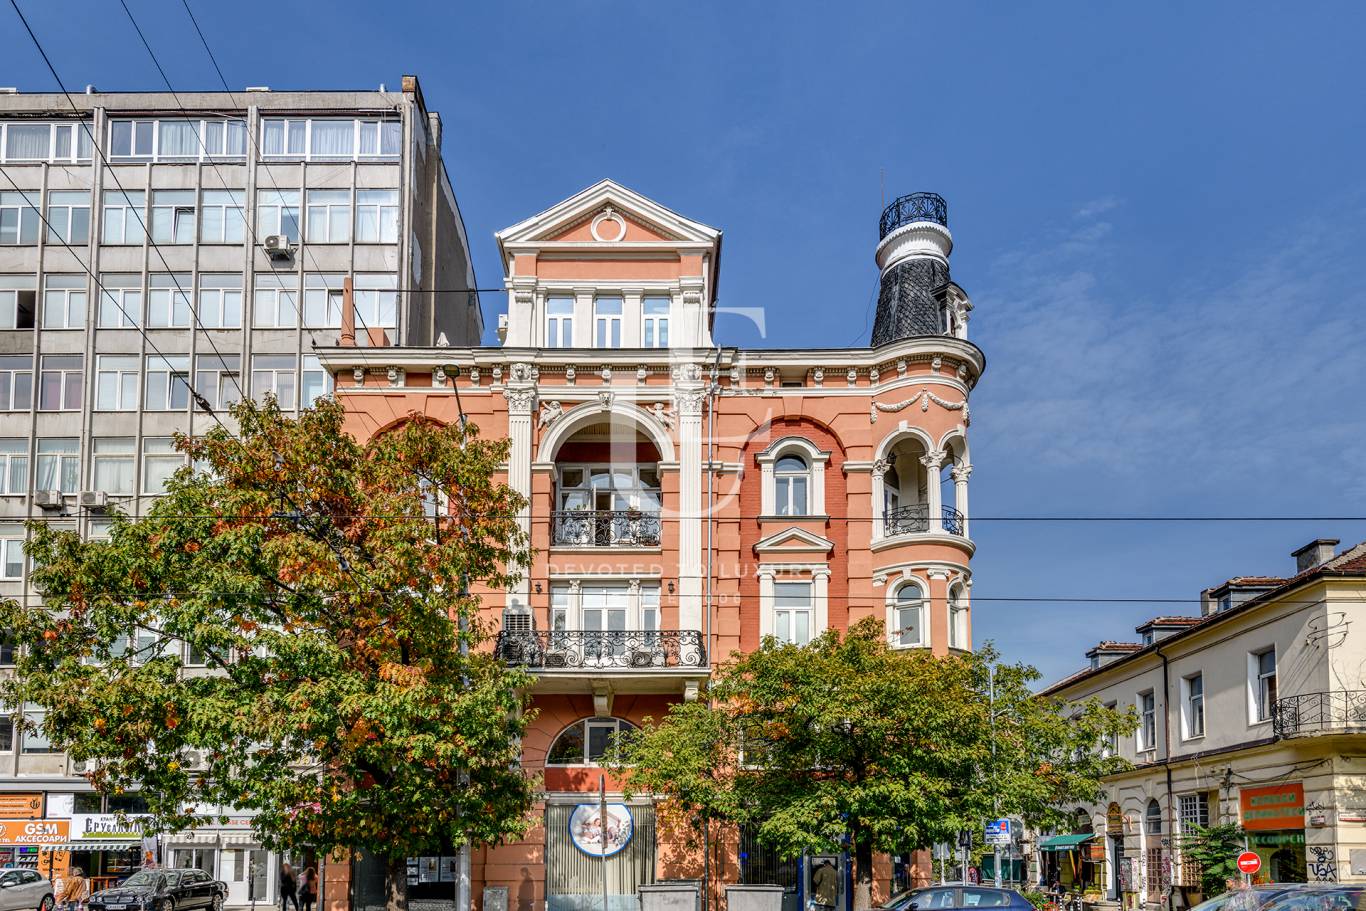 Офис под наем в София, Център - код на имота: K18525 - image 6